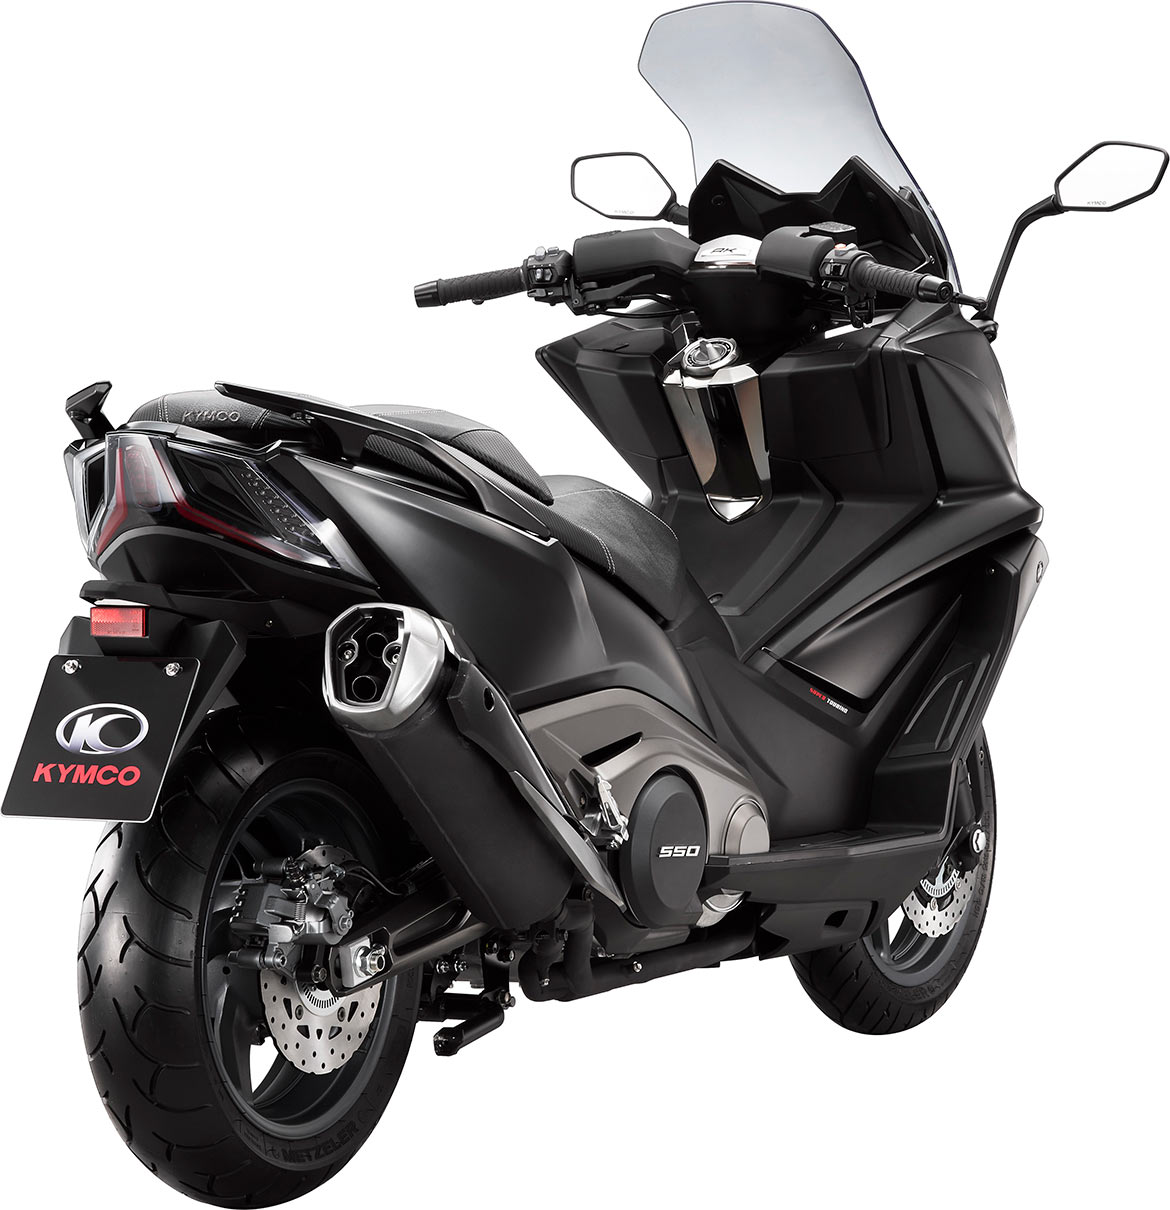 Le maxi-scooter GT affiche des prestations dignes d'une moto sportive